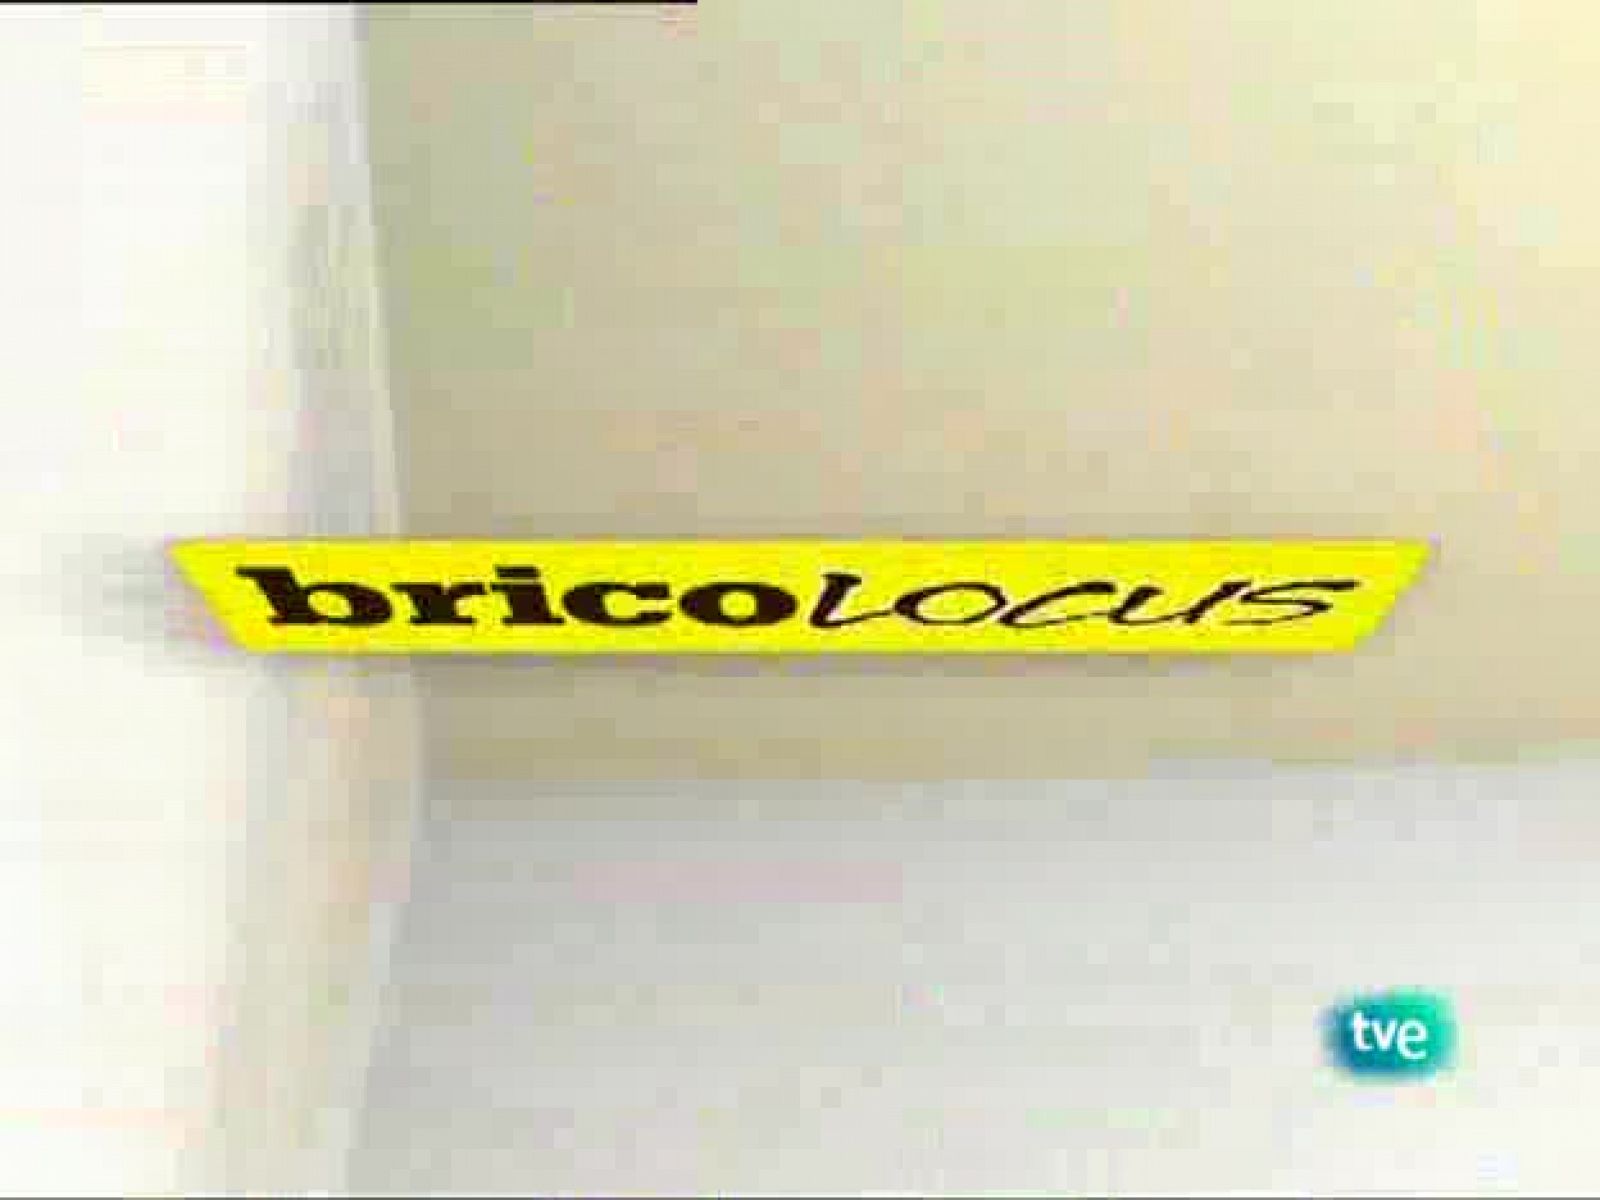 Bricolocus - 06/03/09